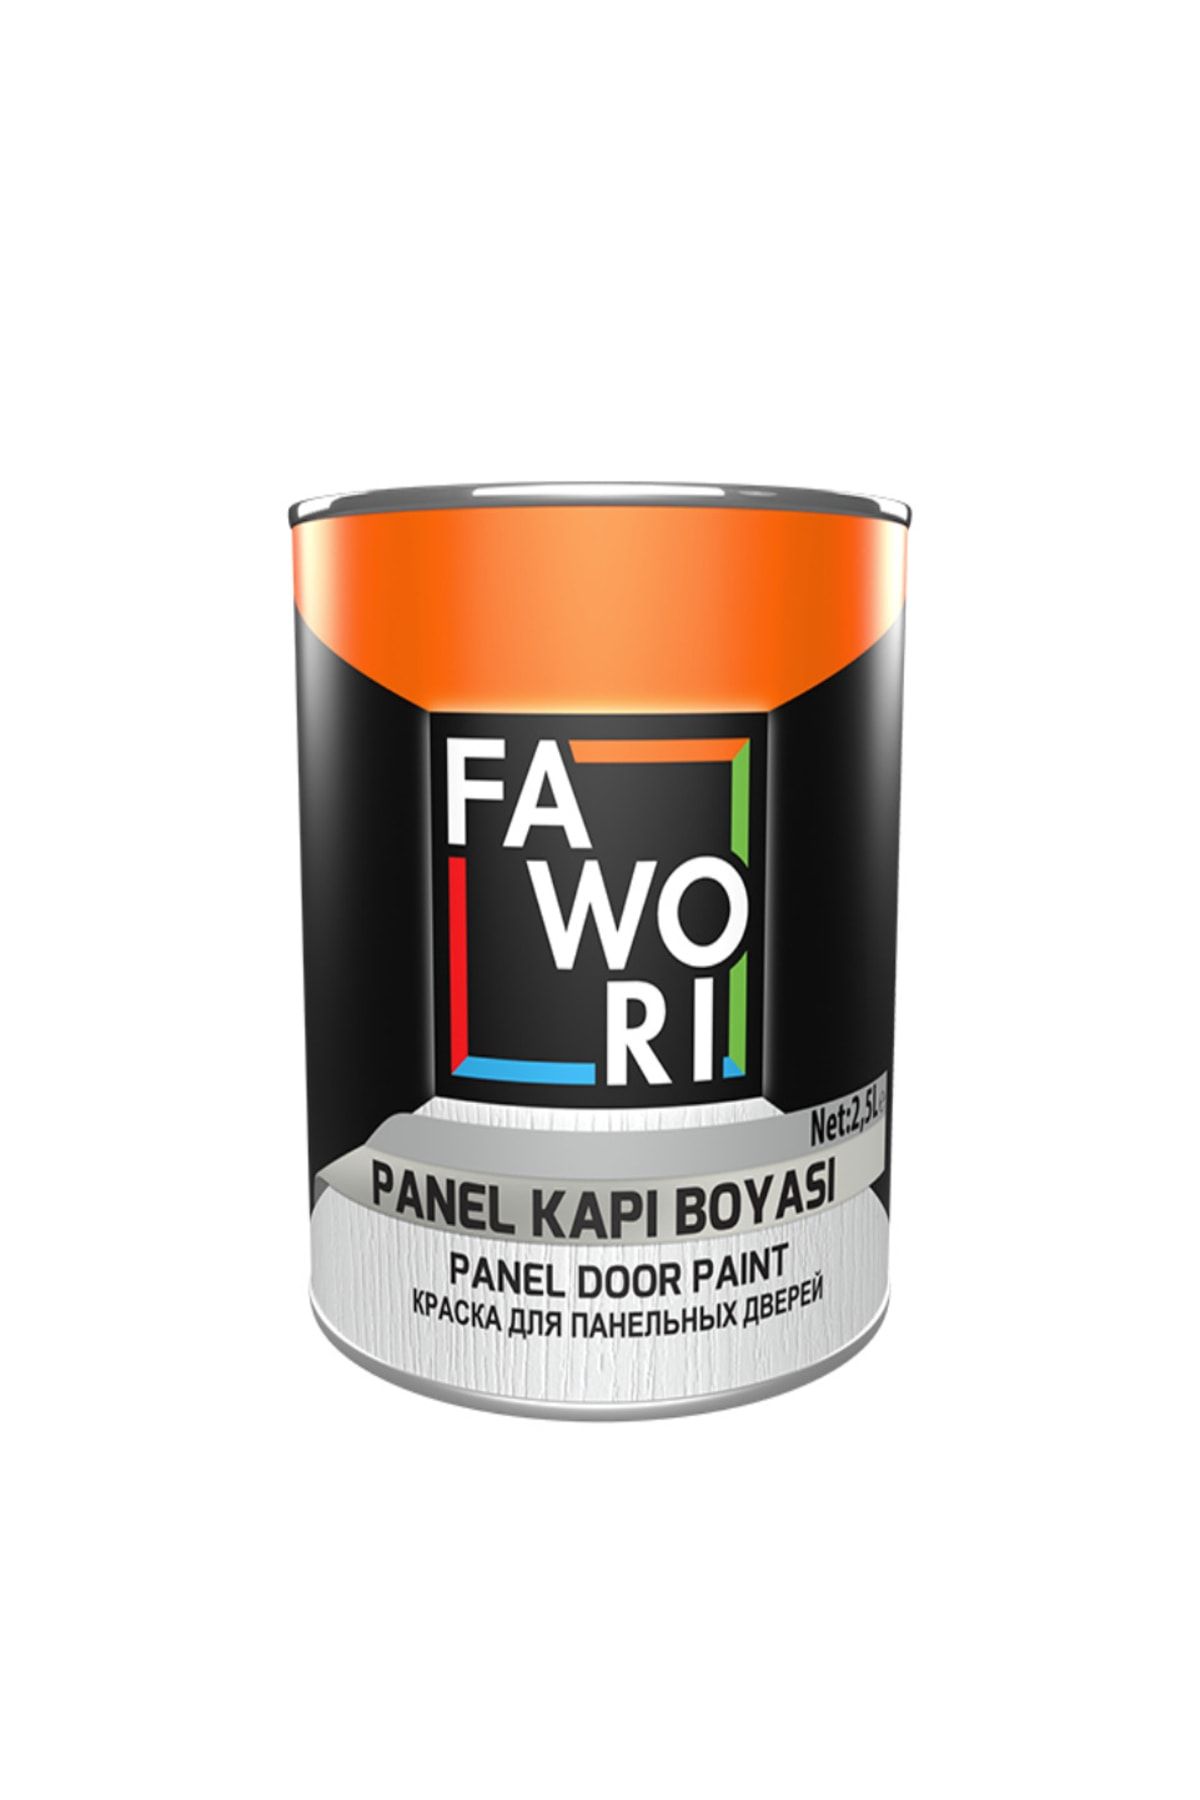 Fawori Su Bazlı Panel Kapı Boyası ( Akrilik Boya ) 2,5 Lt - Beyaz